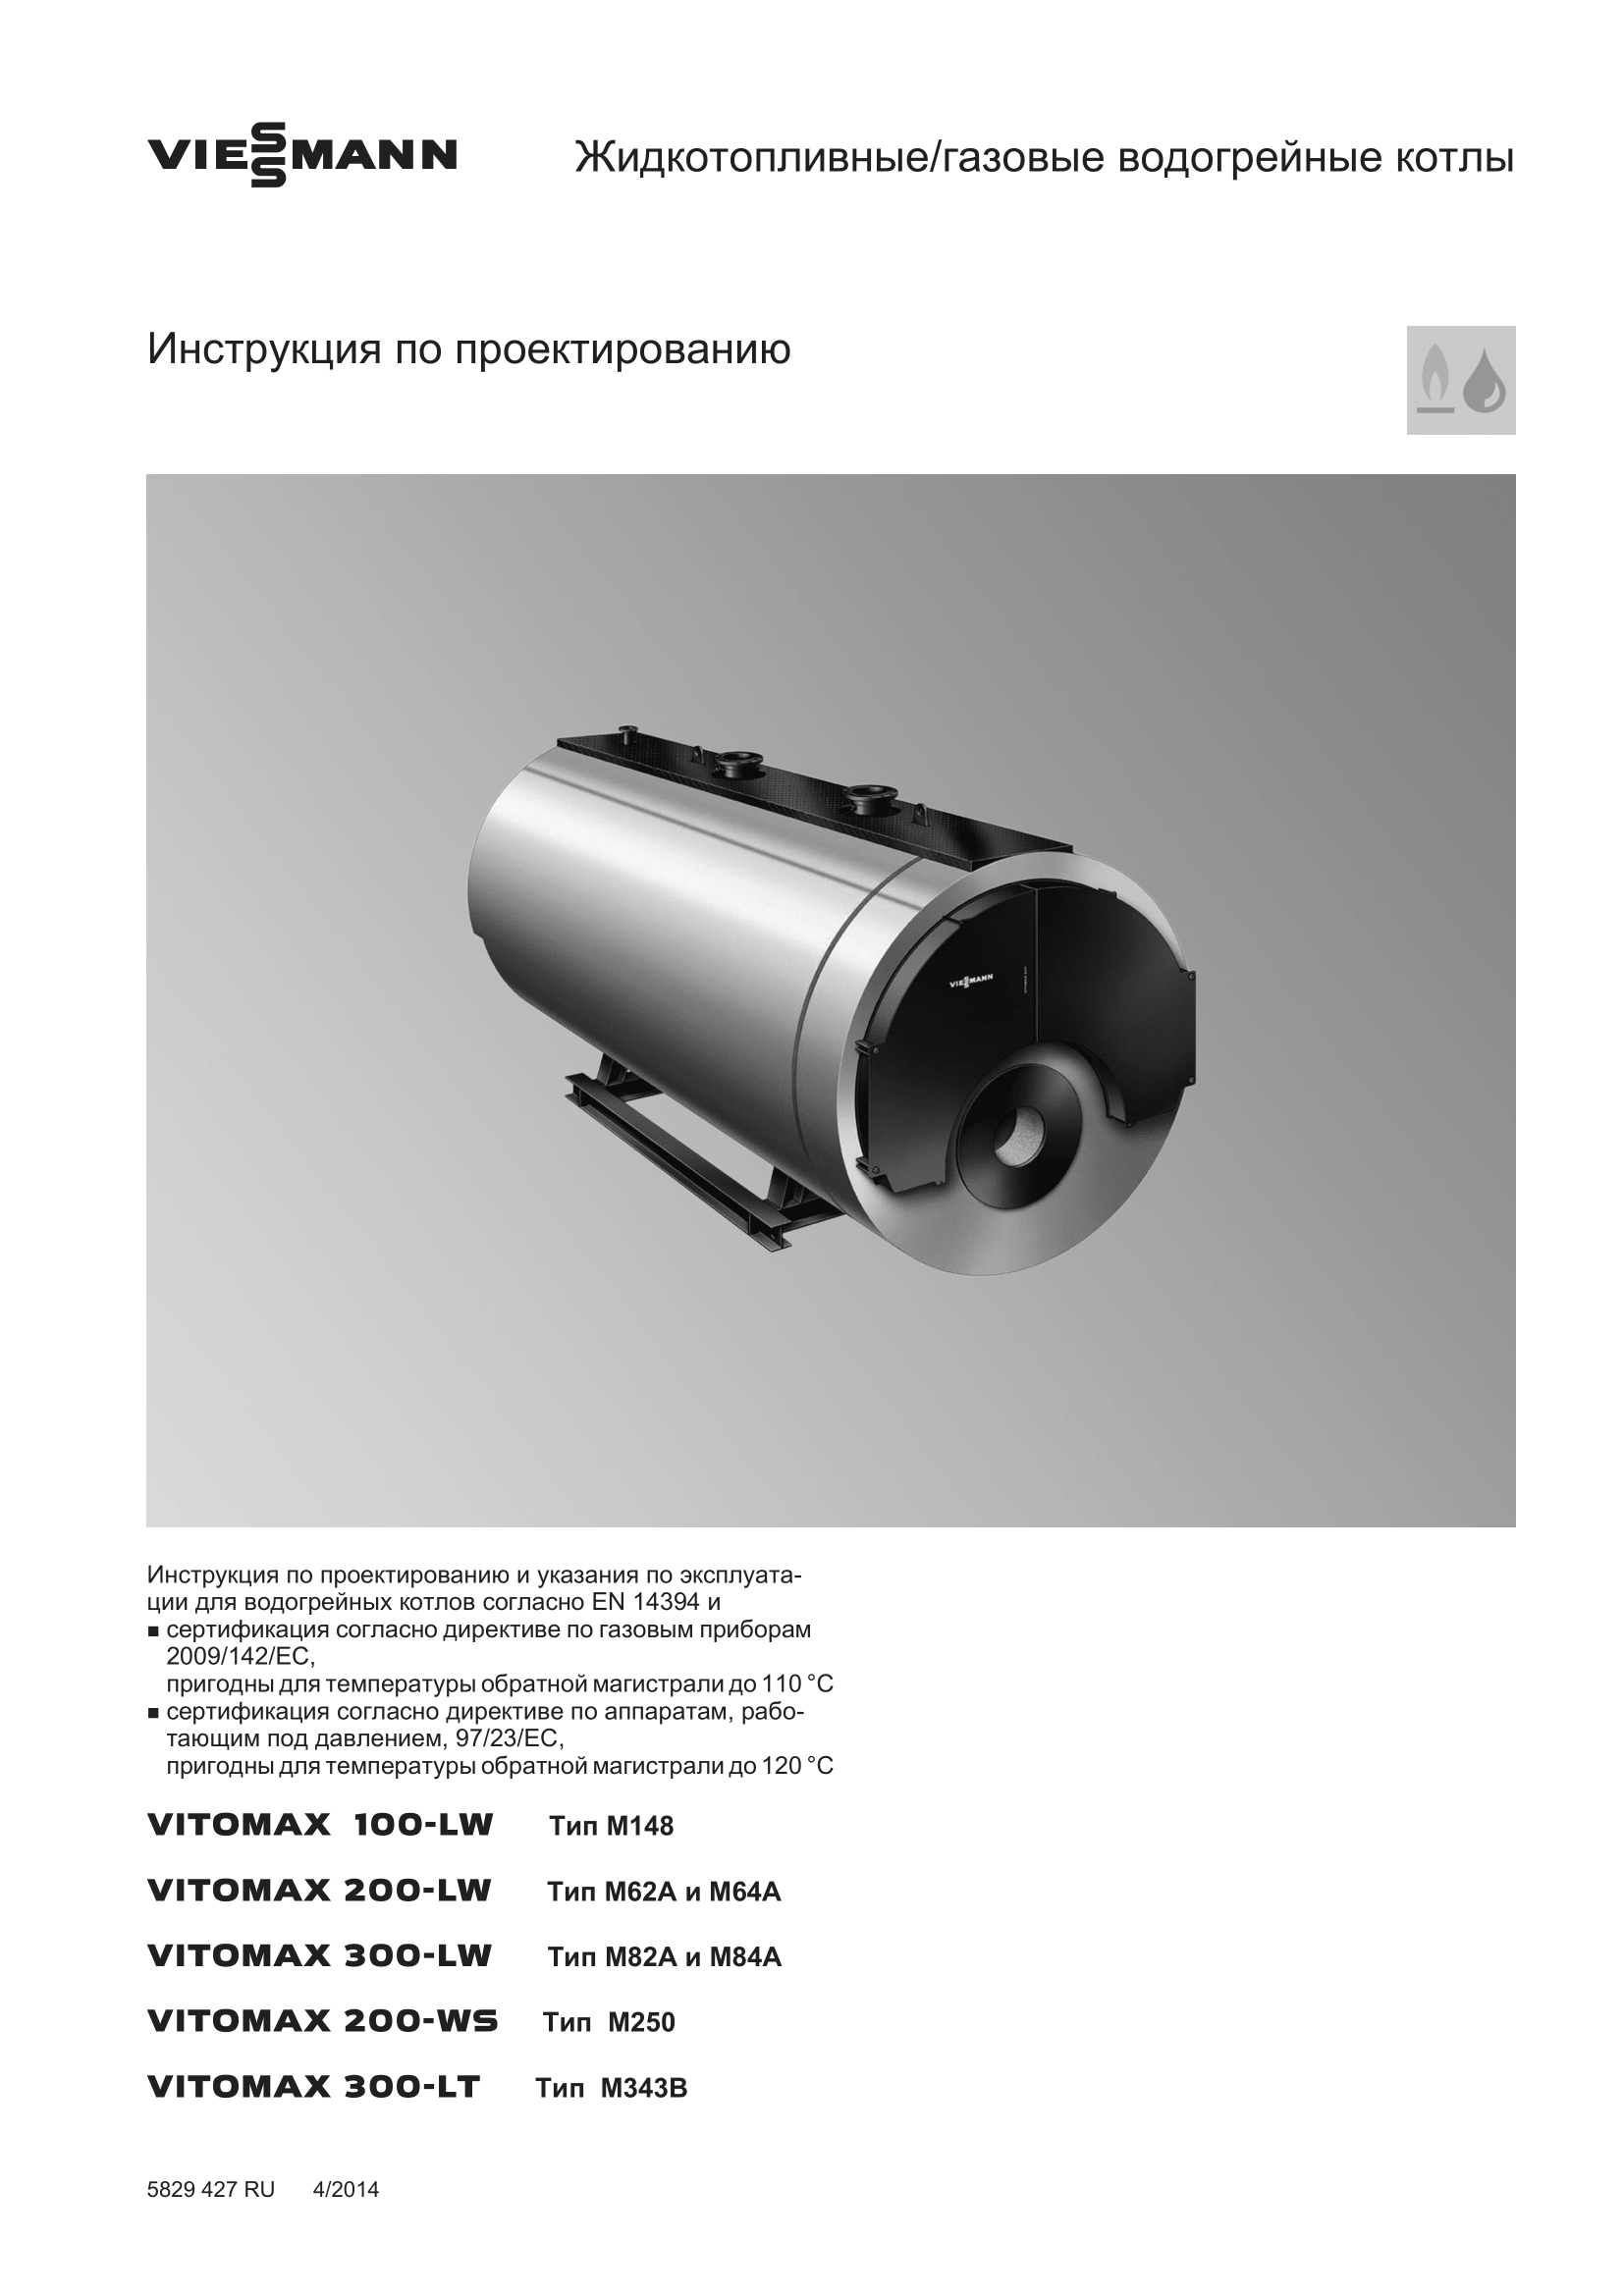 Фотография Инструкция по проектированию для комбинированного котла (дизель/газ) Vitomax 200-LW M64B